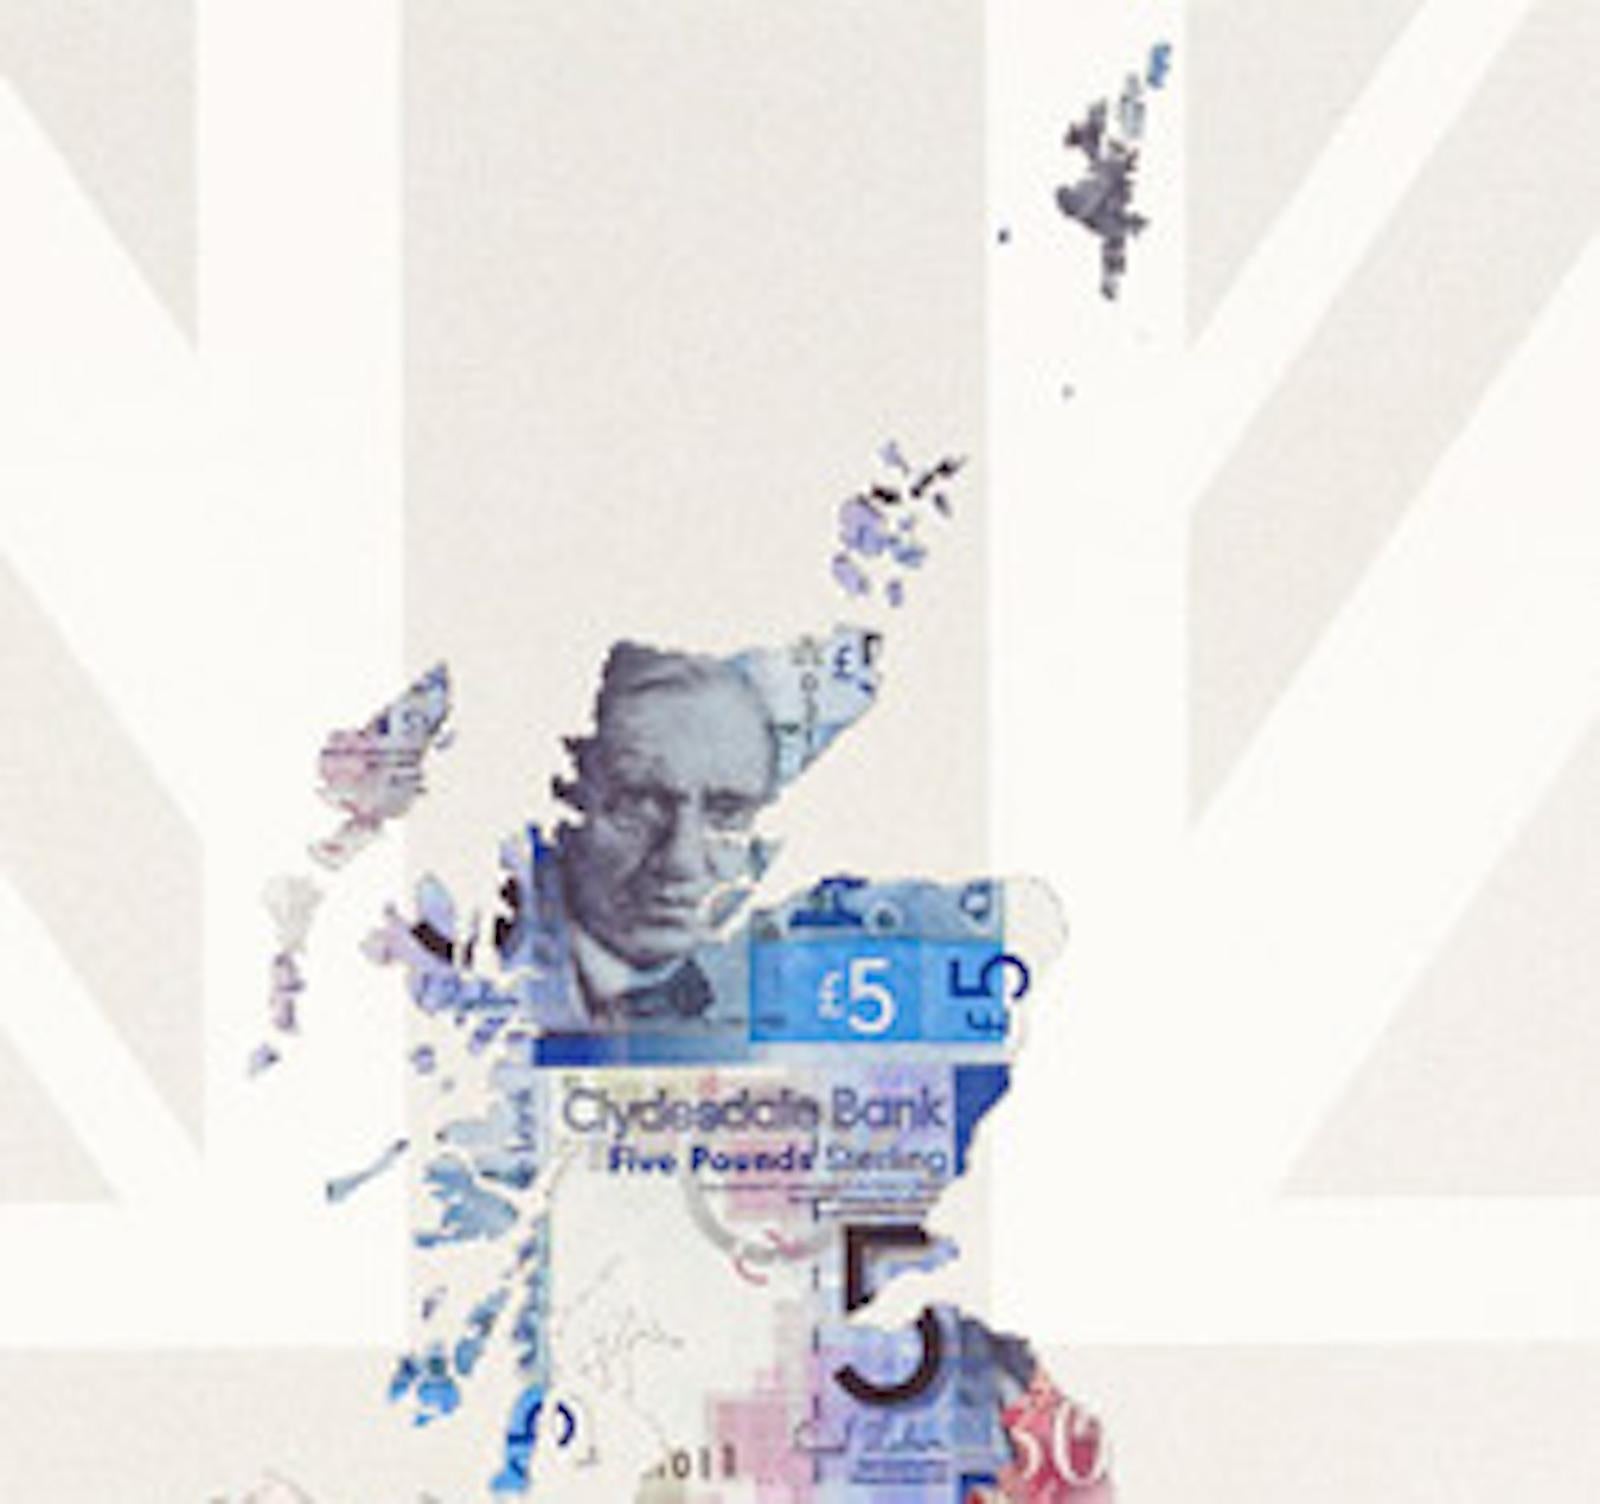 Great Britain, Geldkarte Kunst, Kartenkunst, Finanzkunst, britische Kunstwerke (Grau), Still-Life Print, von Justine Smith